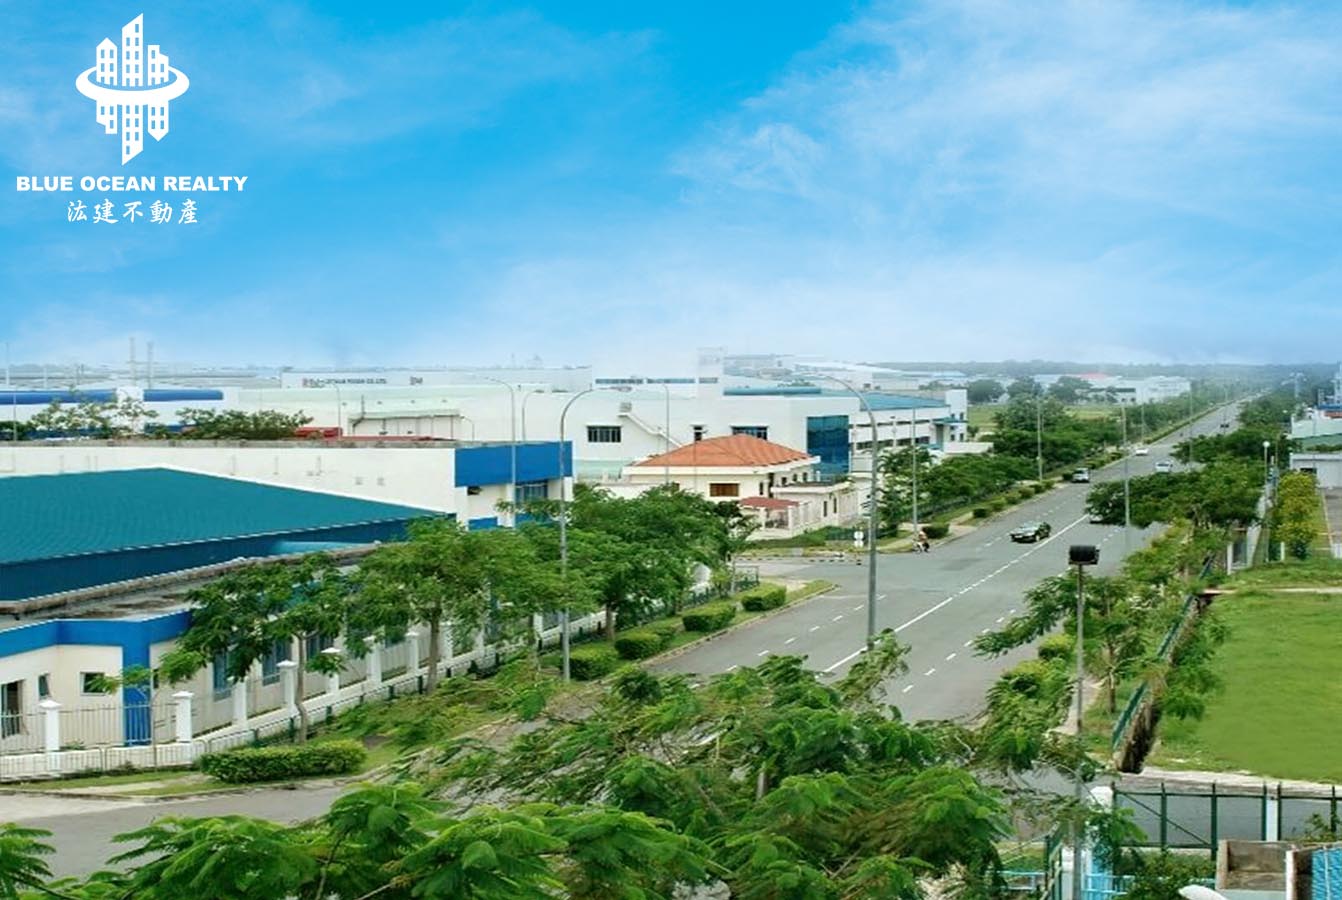 Khu công nghiệp (KCN) Khánh Cư - Ninh Bình